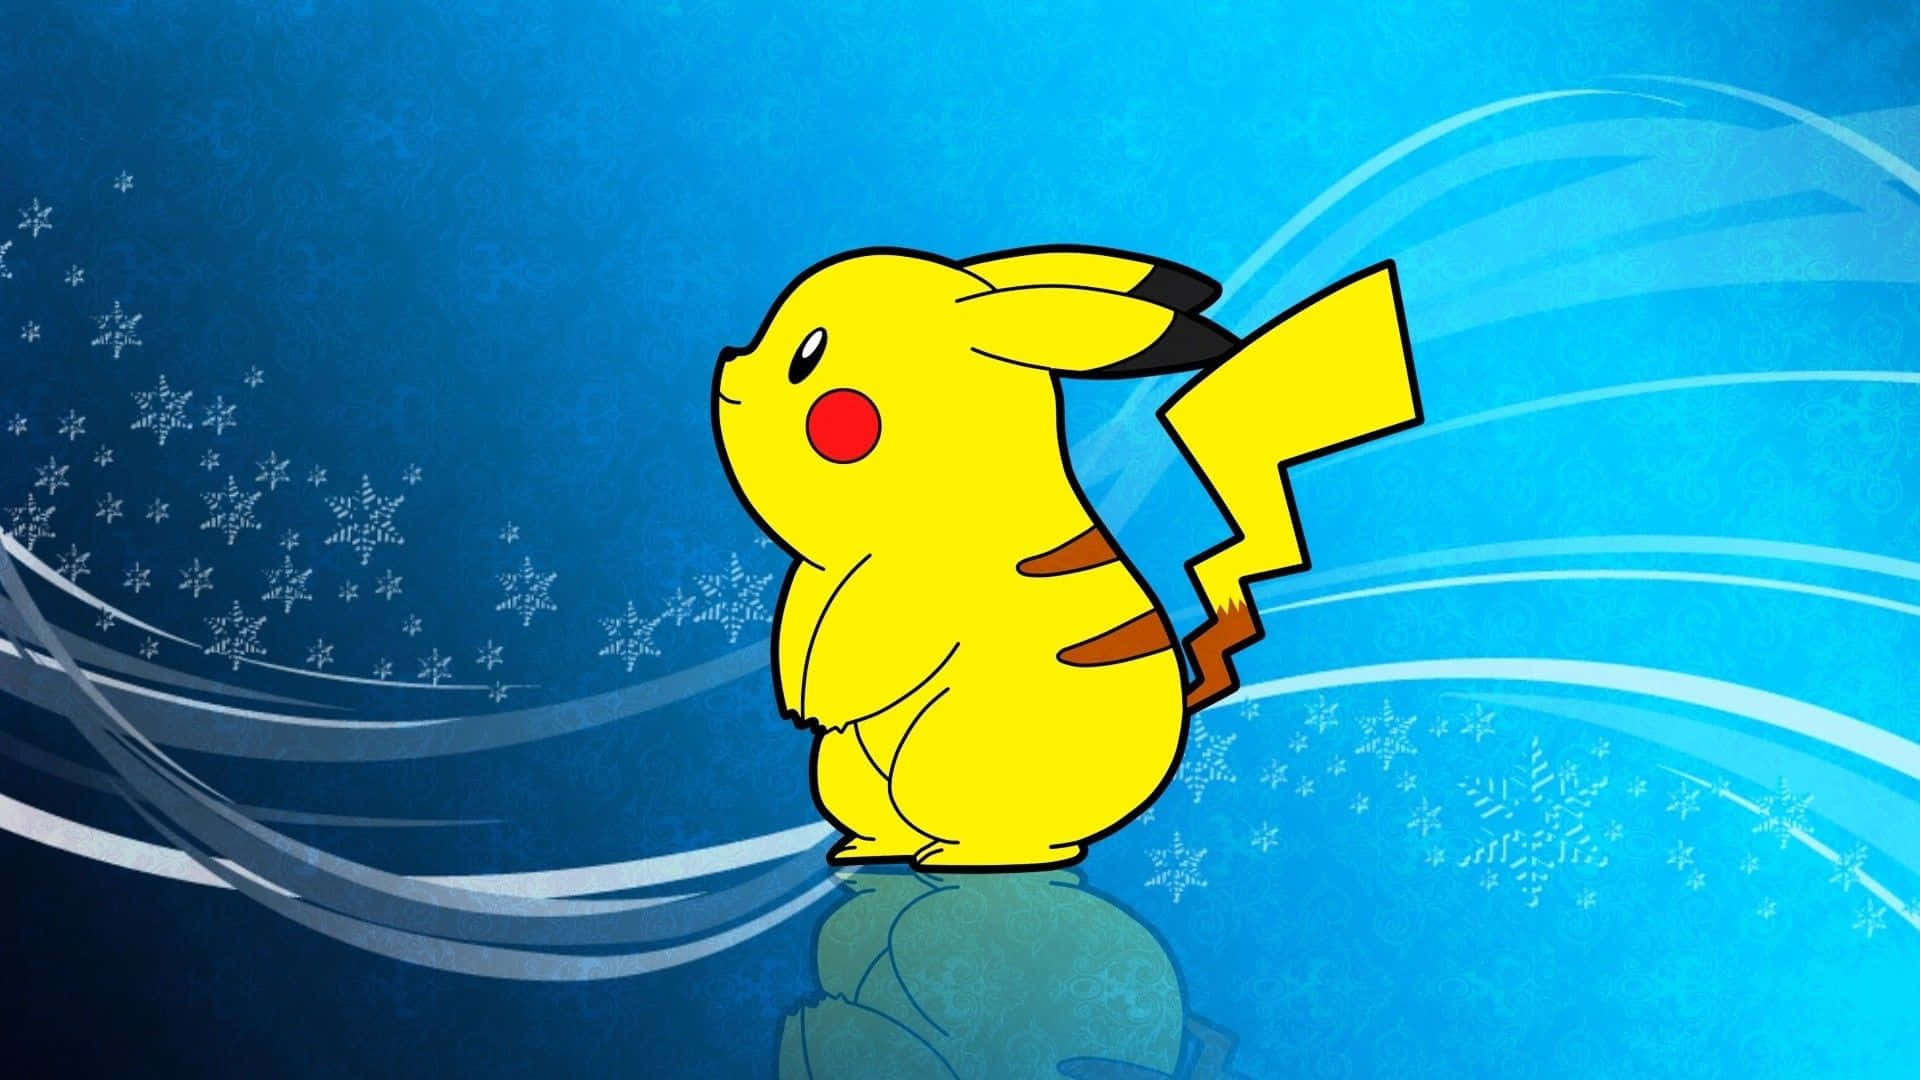 Pokémonweihnachts-pikachu In Eisigem Blau Wallpaper